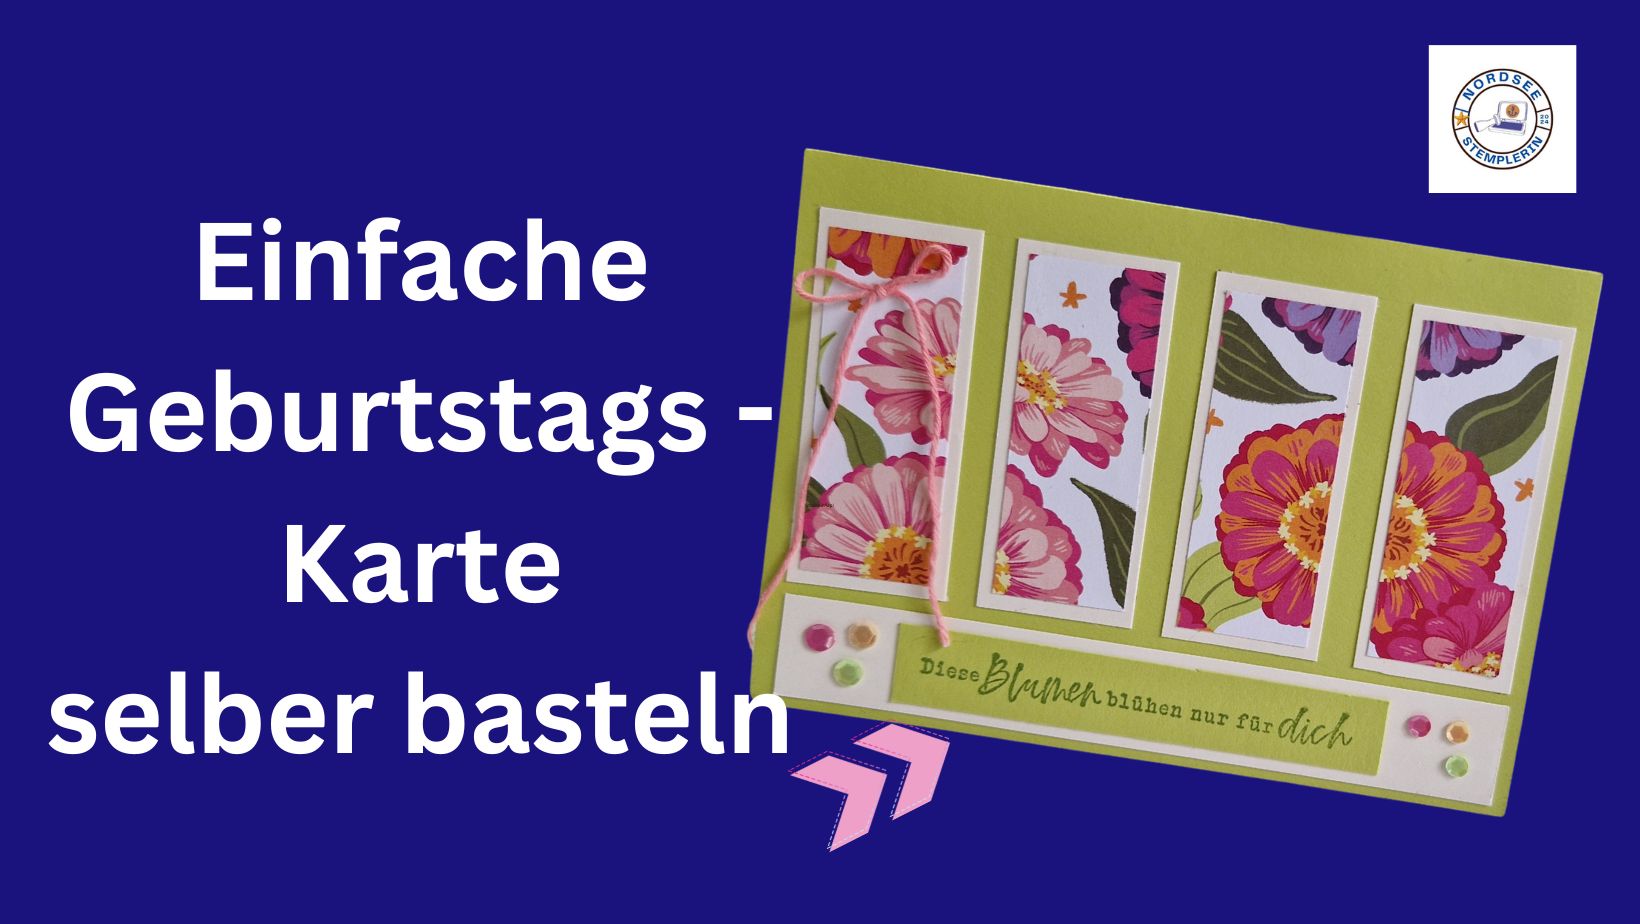 You are currently viewing Einfache Geburtstagskarte selber basteln!